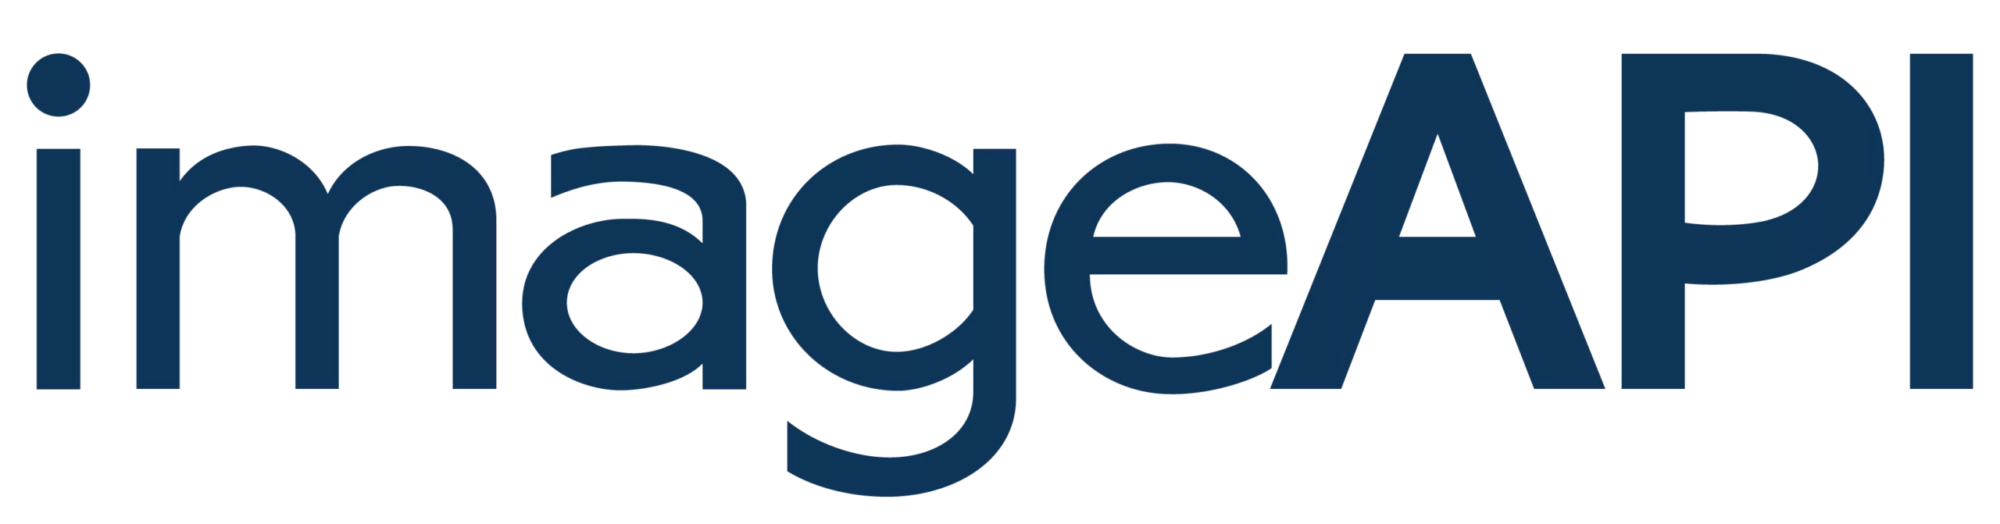 image API logo